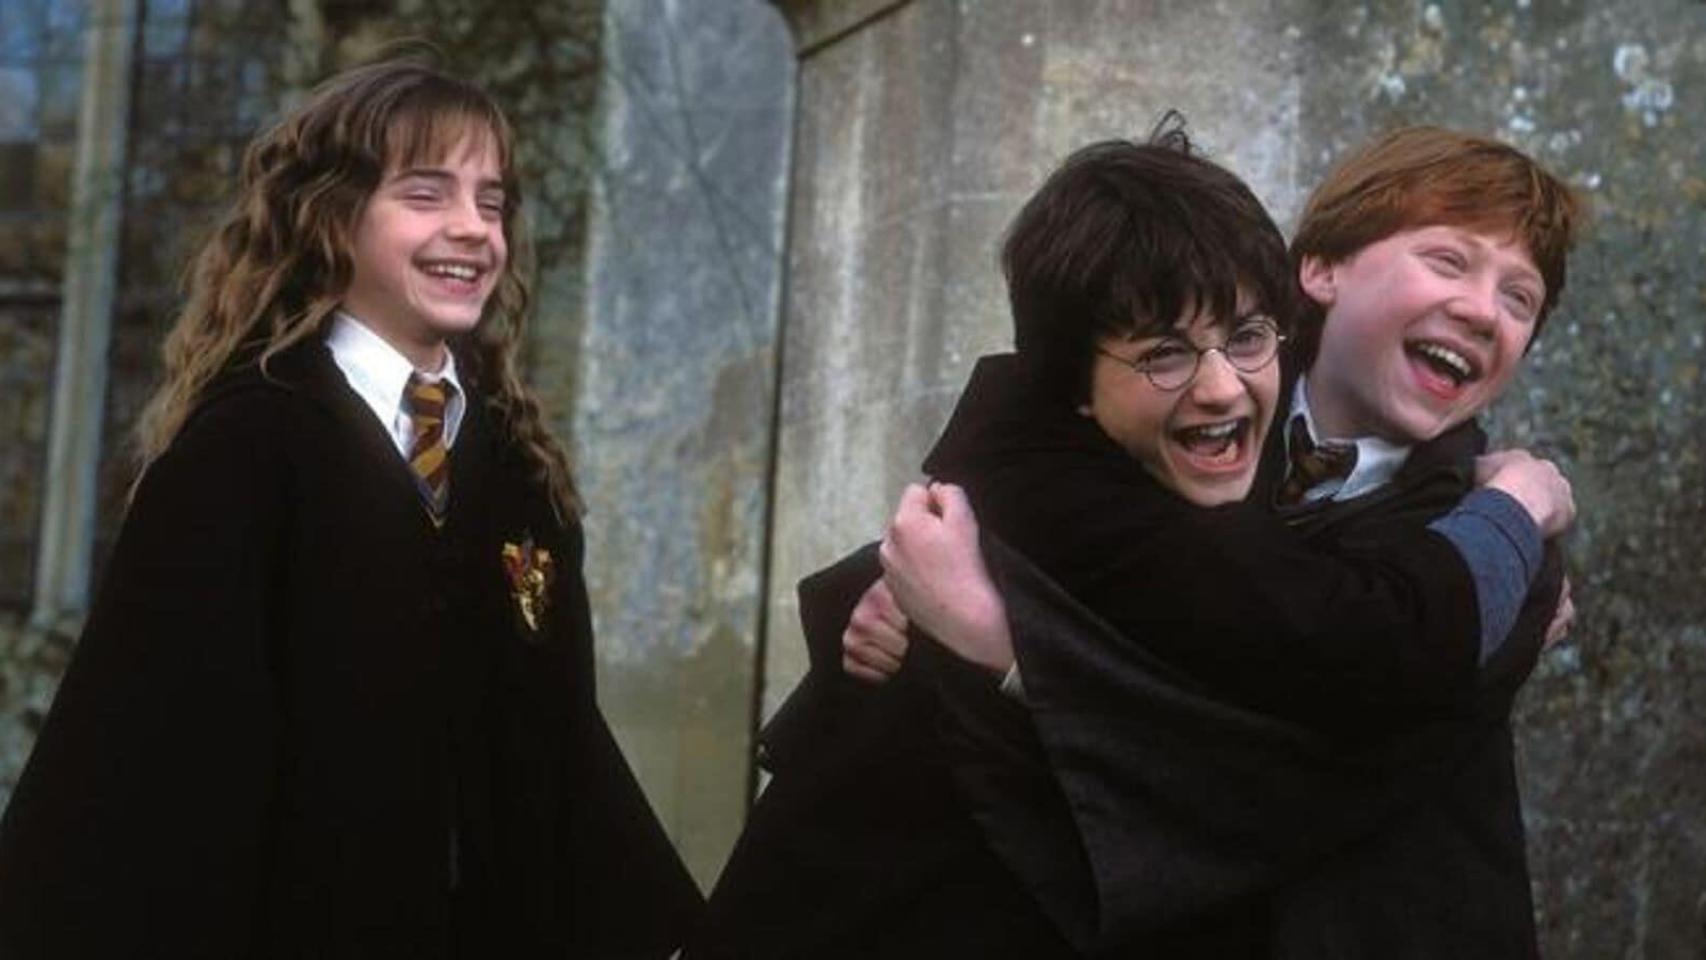 HBO Max prepara una serie sobre Harry Potter: todo lo que sabemos